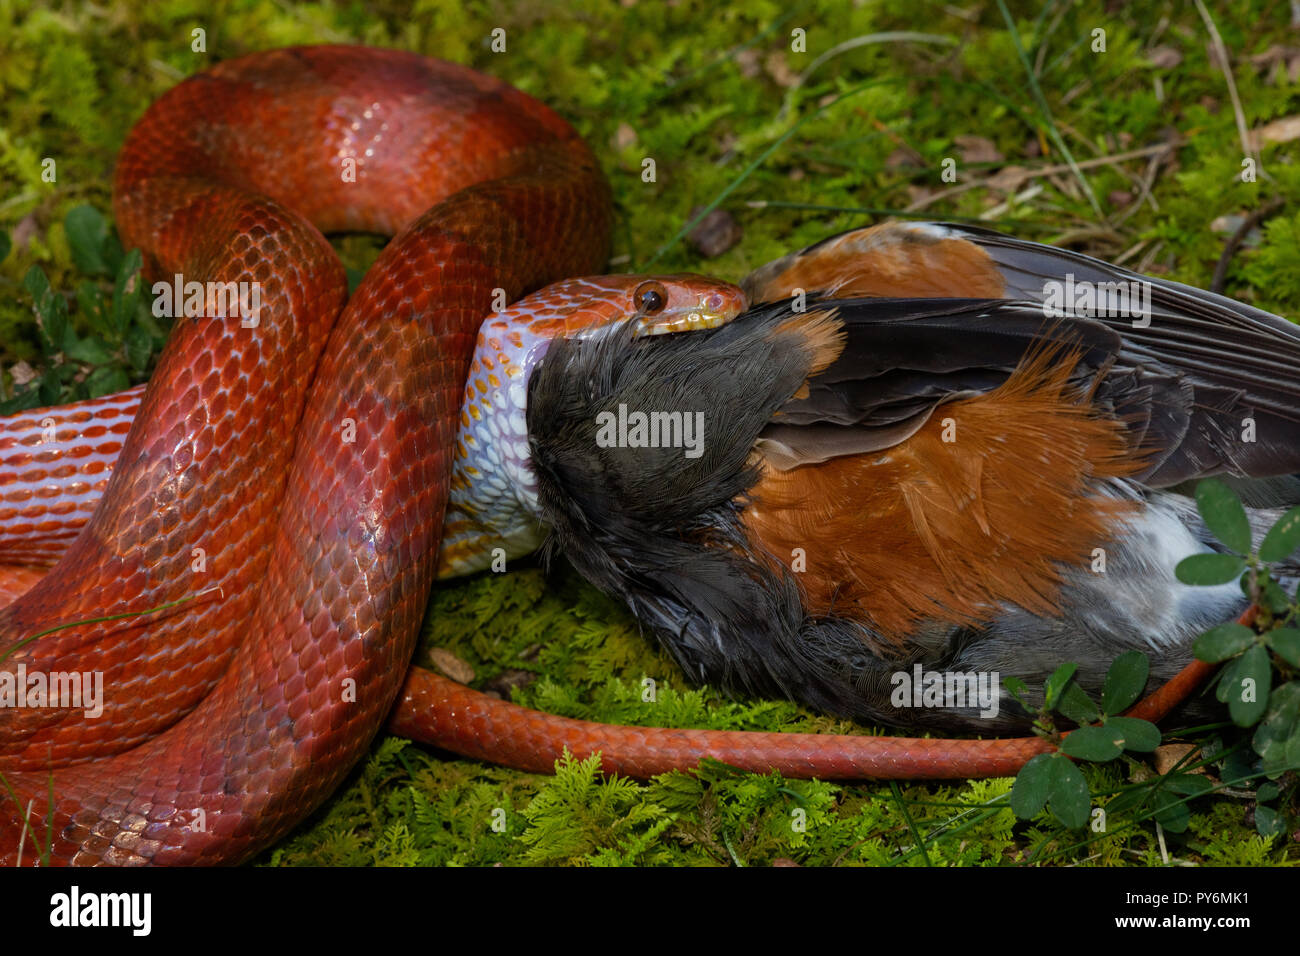 Snake, Pantherophis guttatus de maïs, d'essayer de manger le merle, snake robin en captivité trouvés morts et offert de serpent, Maryland Banque D'Images